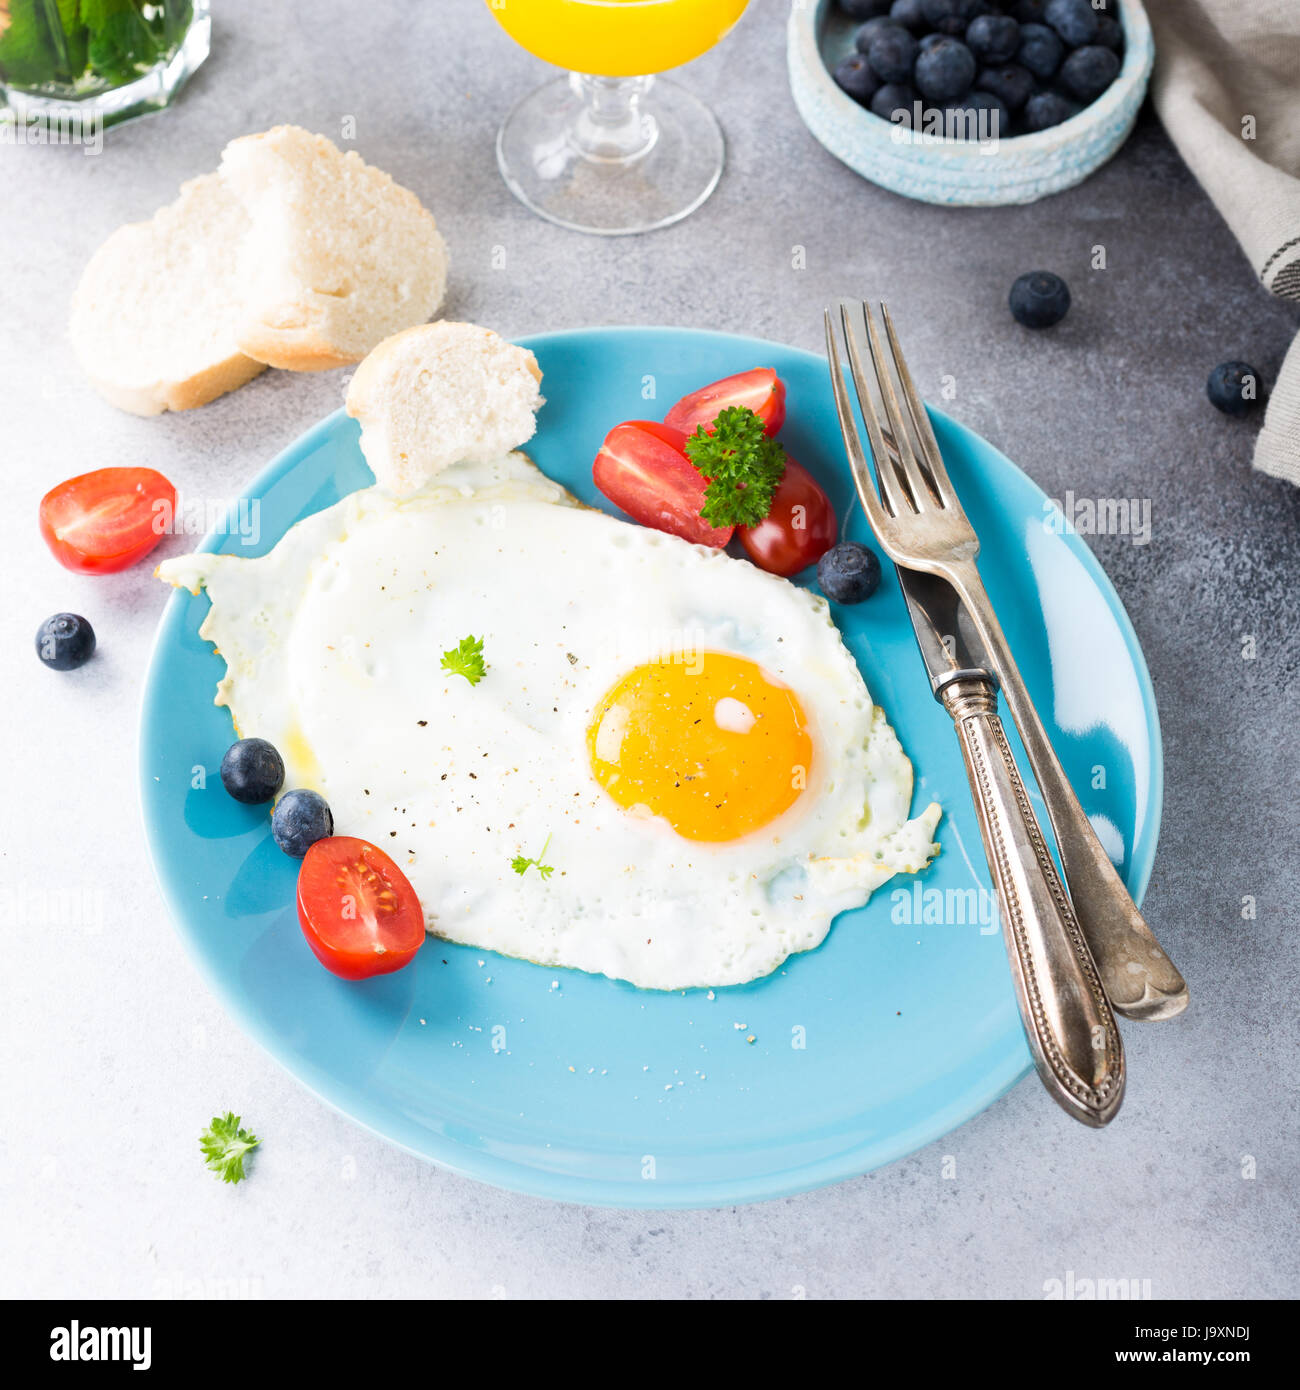 Fried egg and orange juice Stock Photo